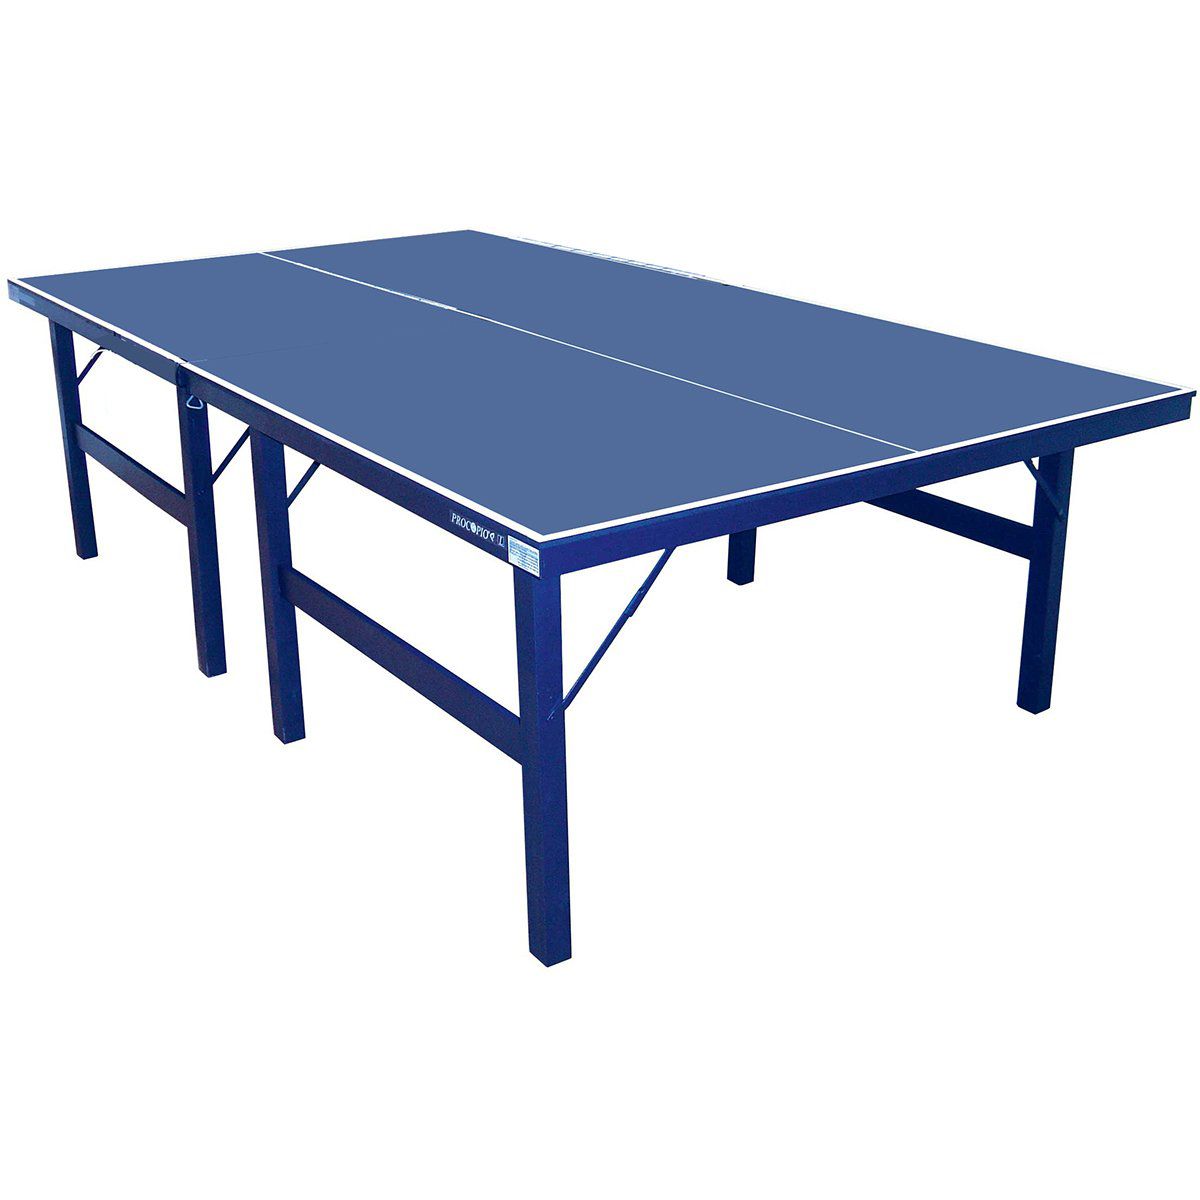 Montagem Mesa de Tênis Dobrável da Klopf - Ping-Pong 